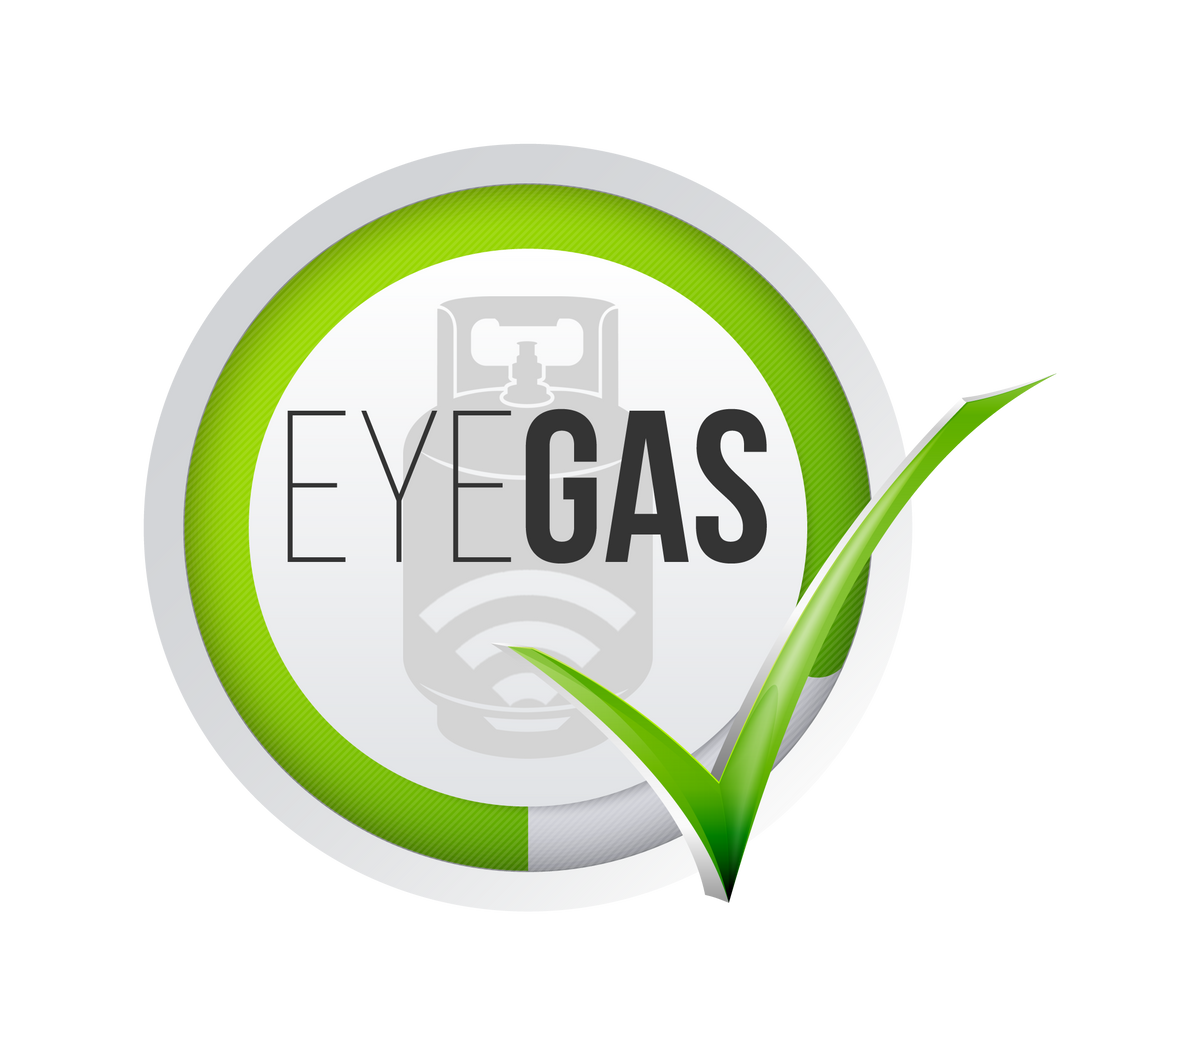 Eyegas – Eyegas Products (PTY) Ltd.